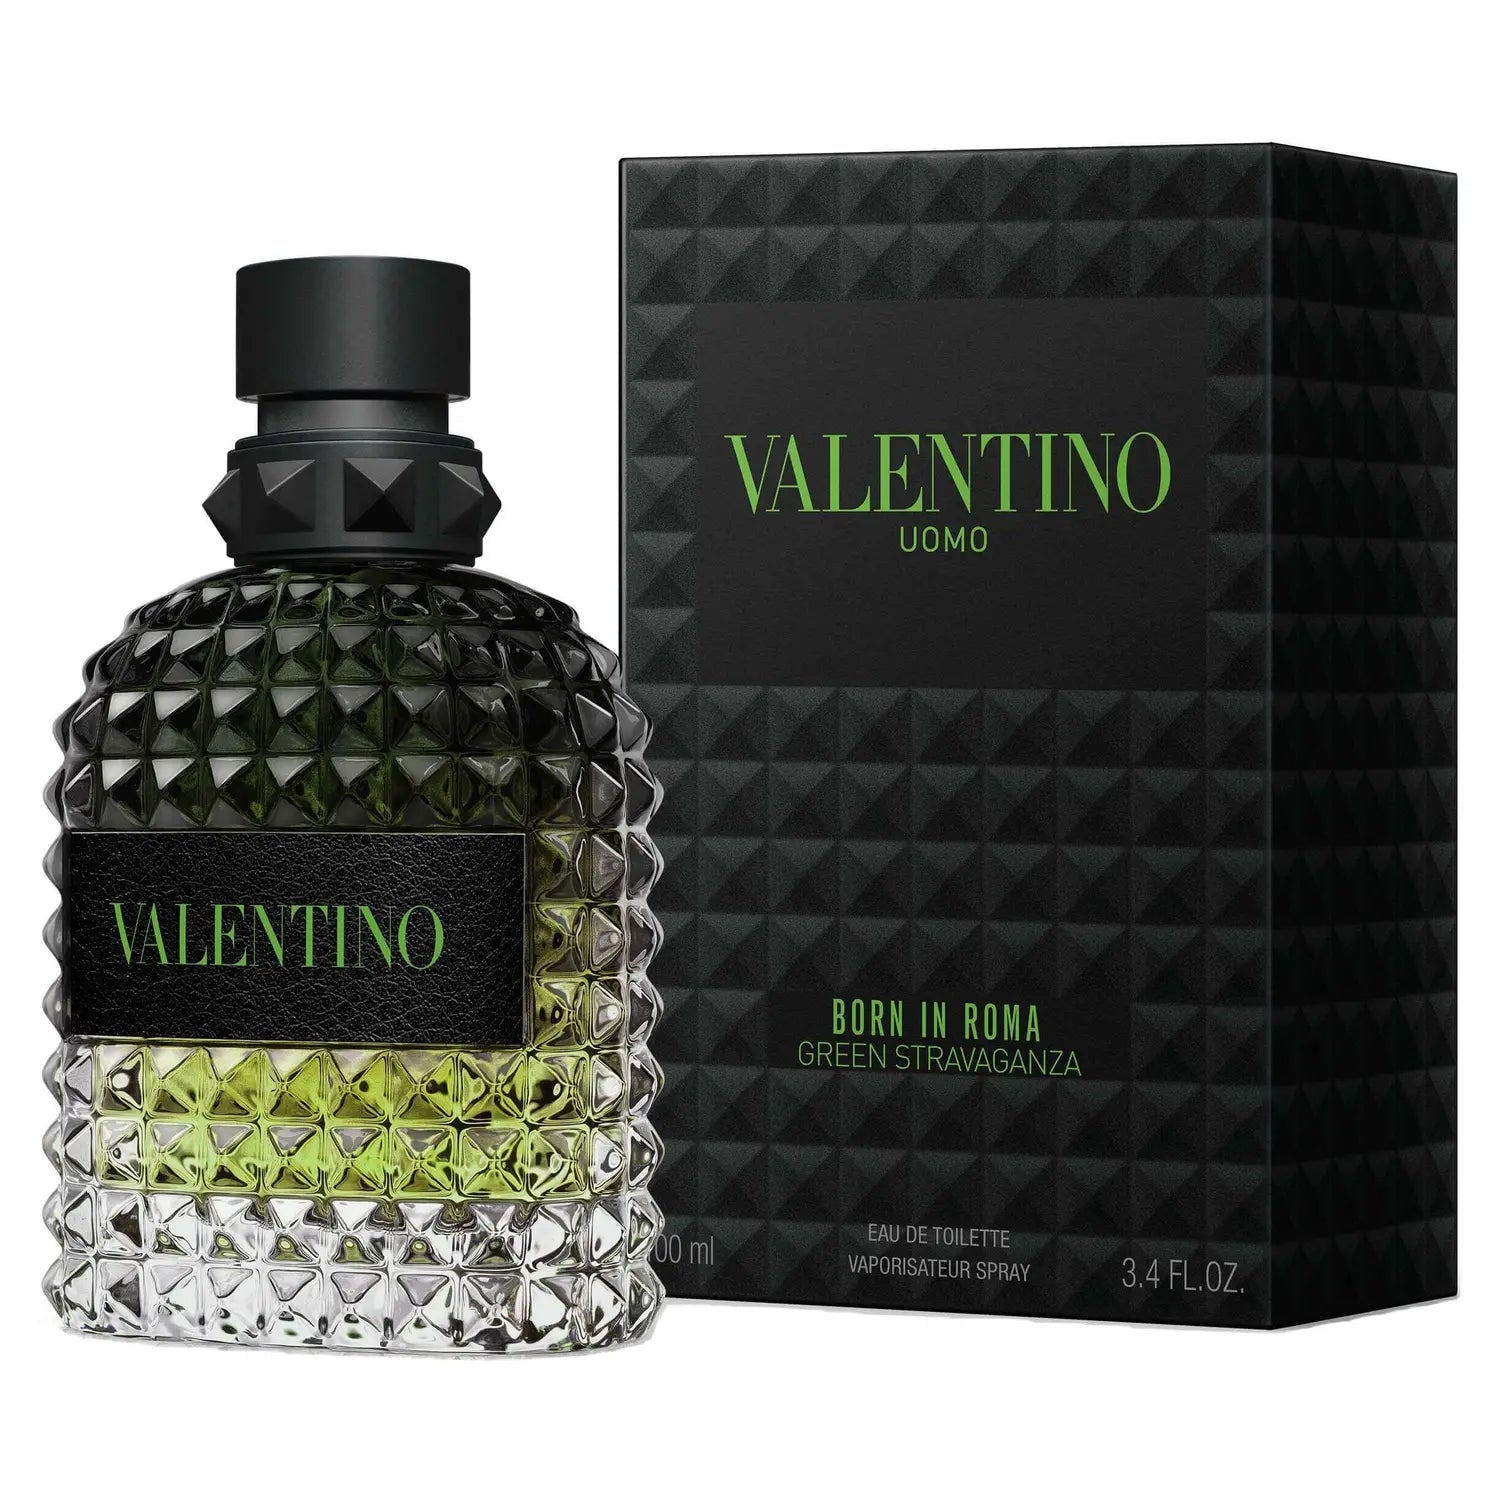 Valentino Uomo Born in Roma Green Stravaganza by Valentino 3.4 oz EDT Spray for Men